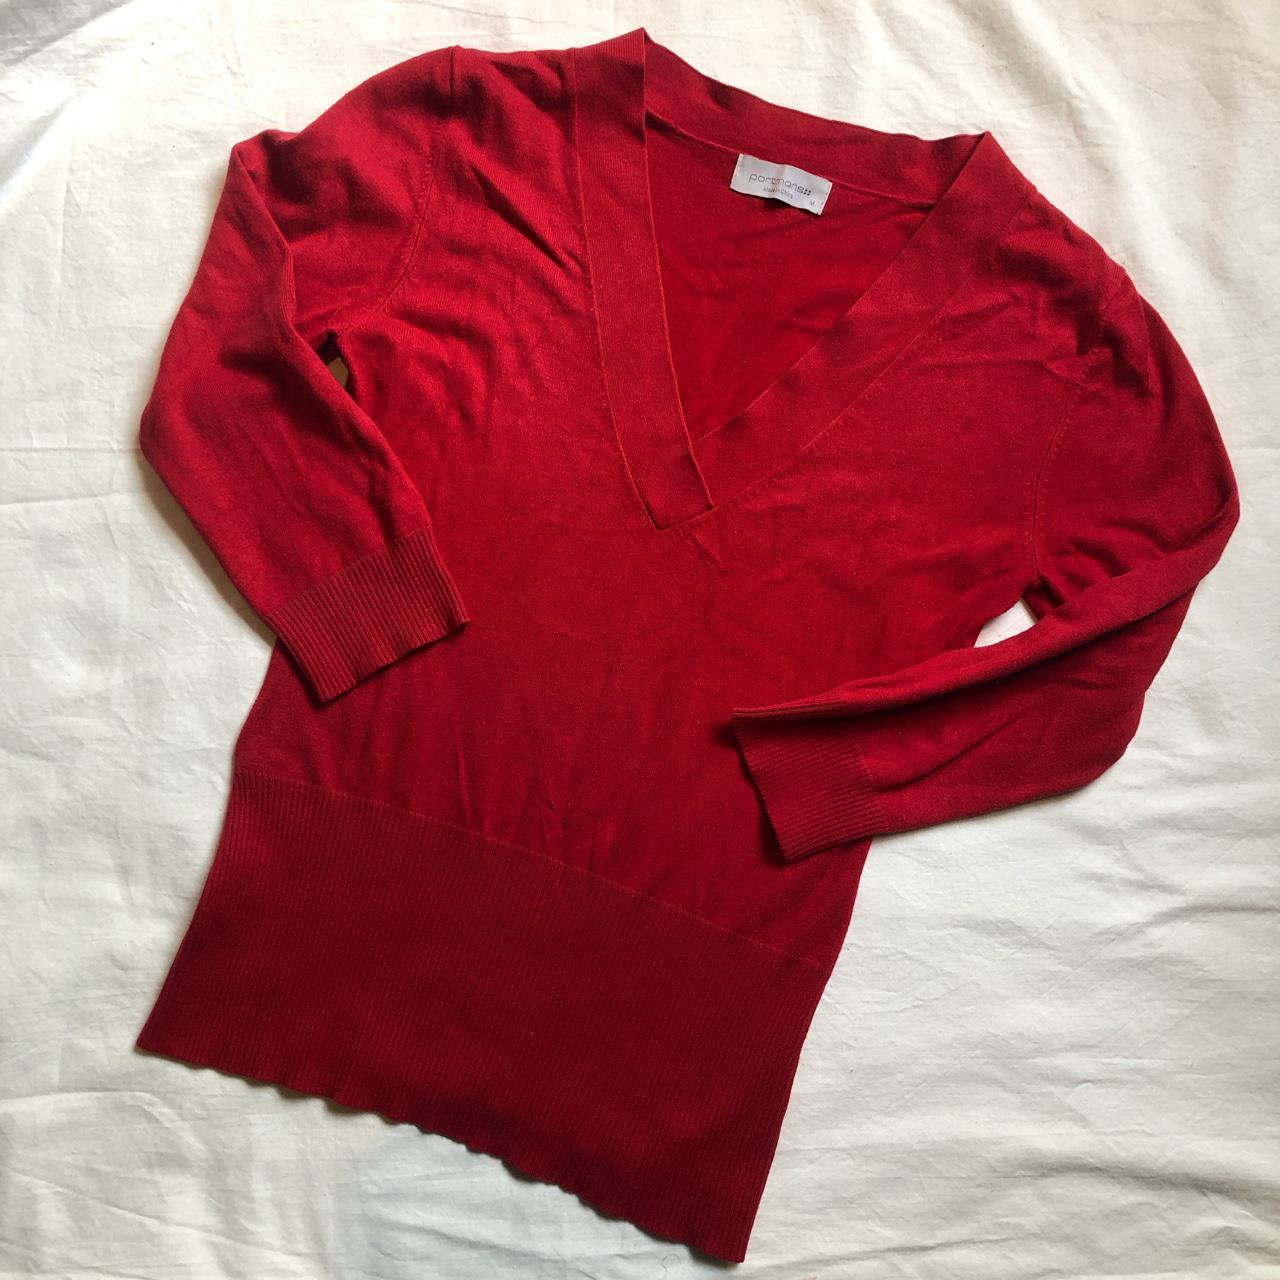 Red PORTMANS sweater Red Portmans sweater, made in... - Depop